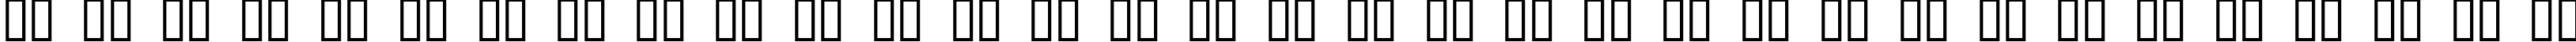 Пример написания русского алфавита шрифтом Guevara